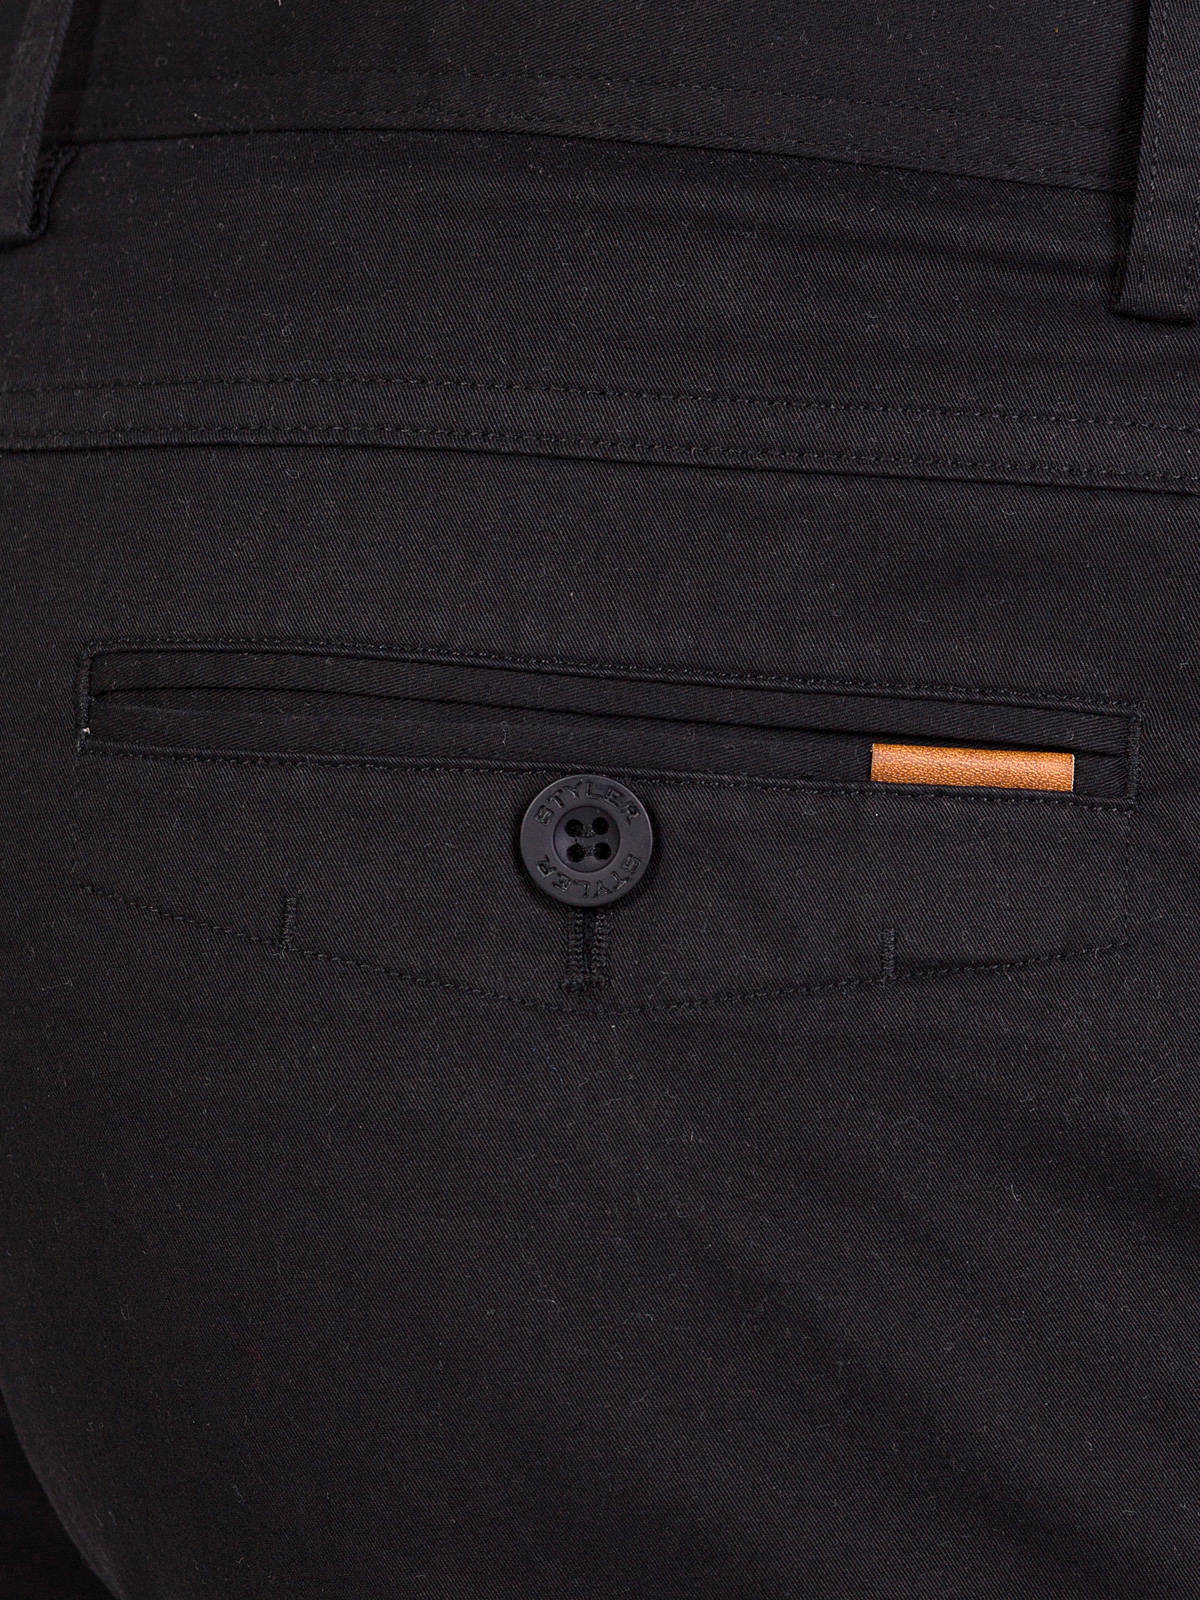  παντελόνι σε μαύρο βαμβάκι με ελαστάνη  - 63229 € 11.25 img4